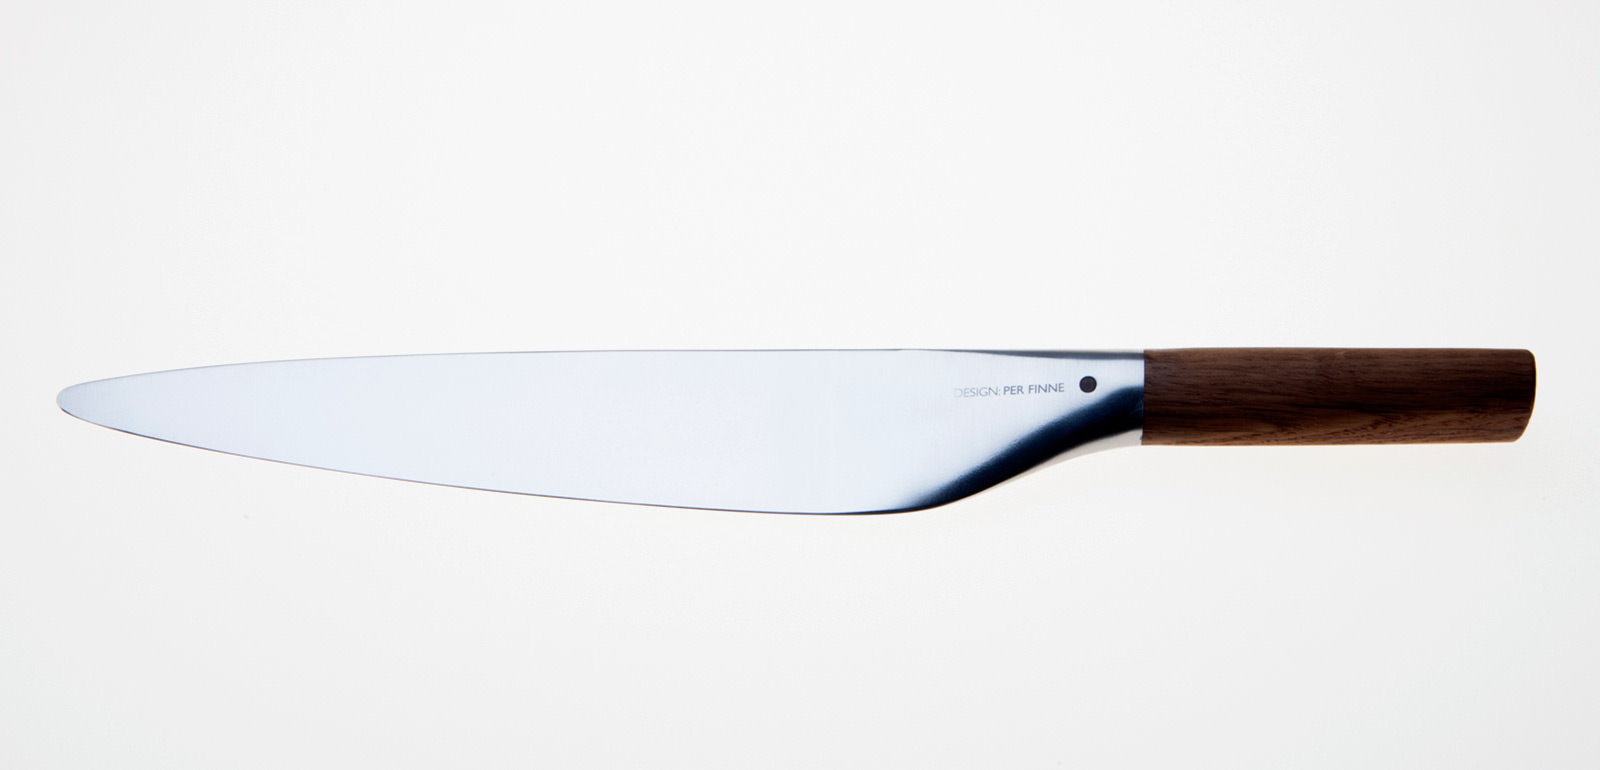 Per Finne Chef's Knife